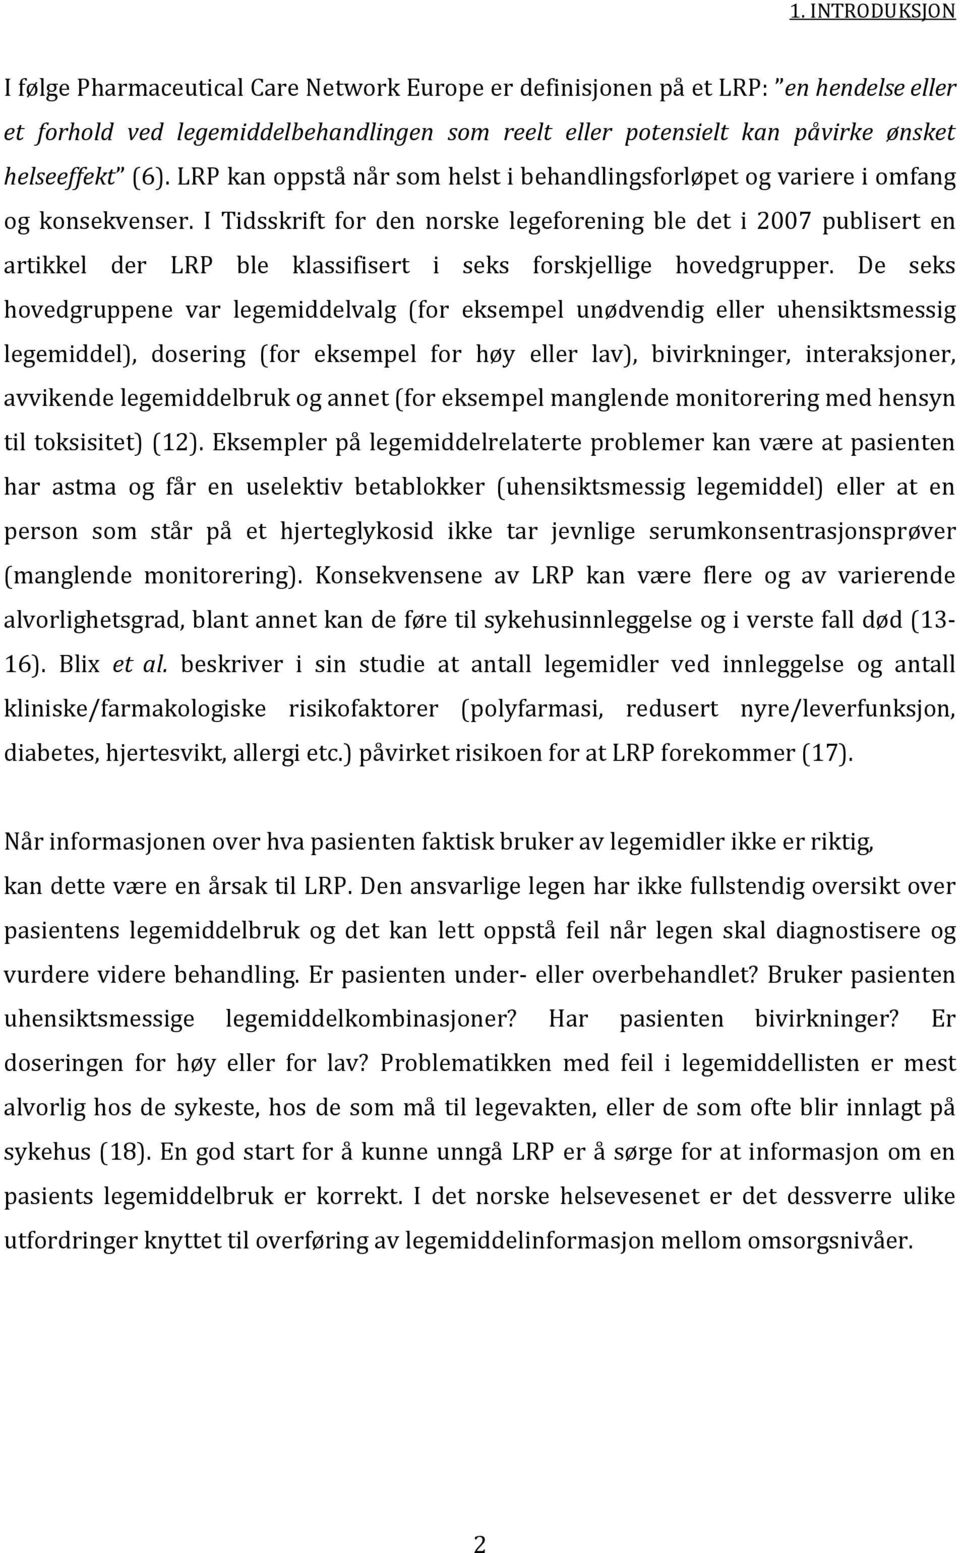 I Tidsskrift for den norske legeforening ble det i 2007 publisert en artikkel der LRP ble klassifisert i seks forskjellige hovedgrupper.